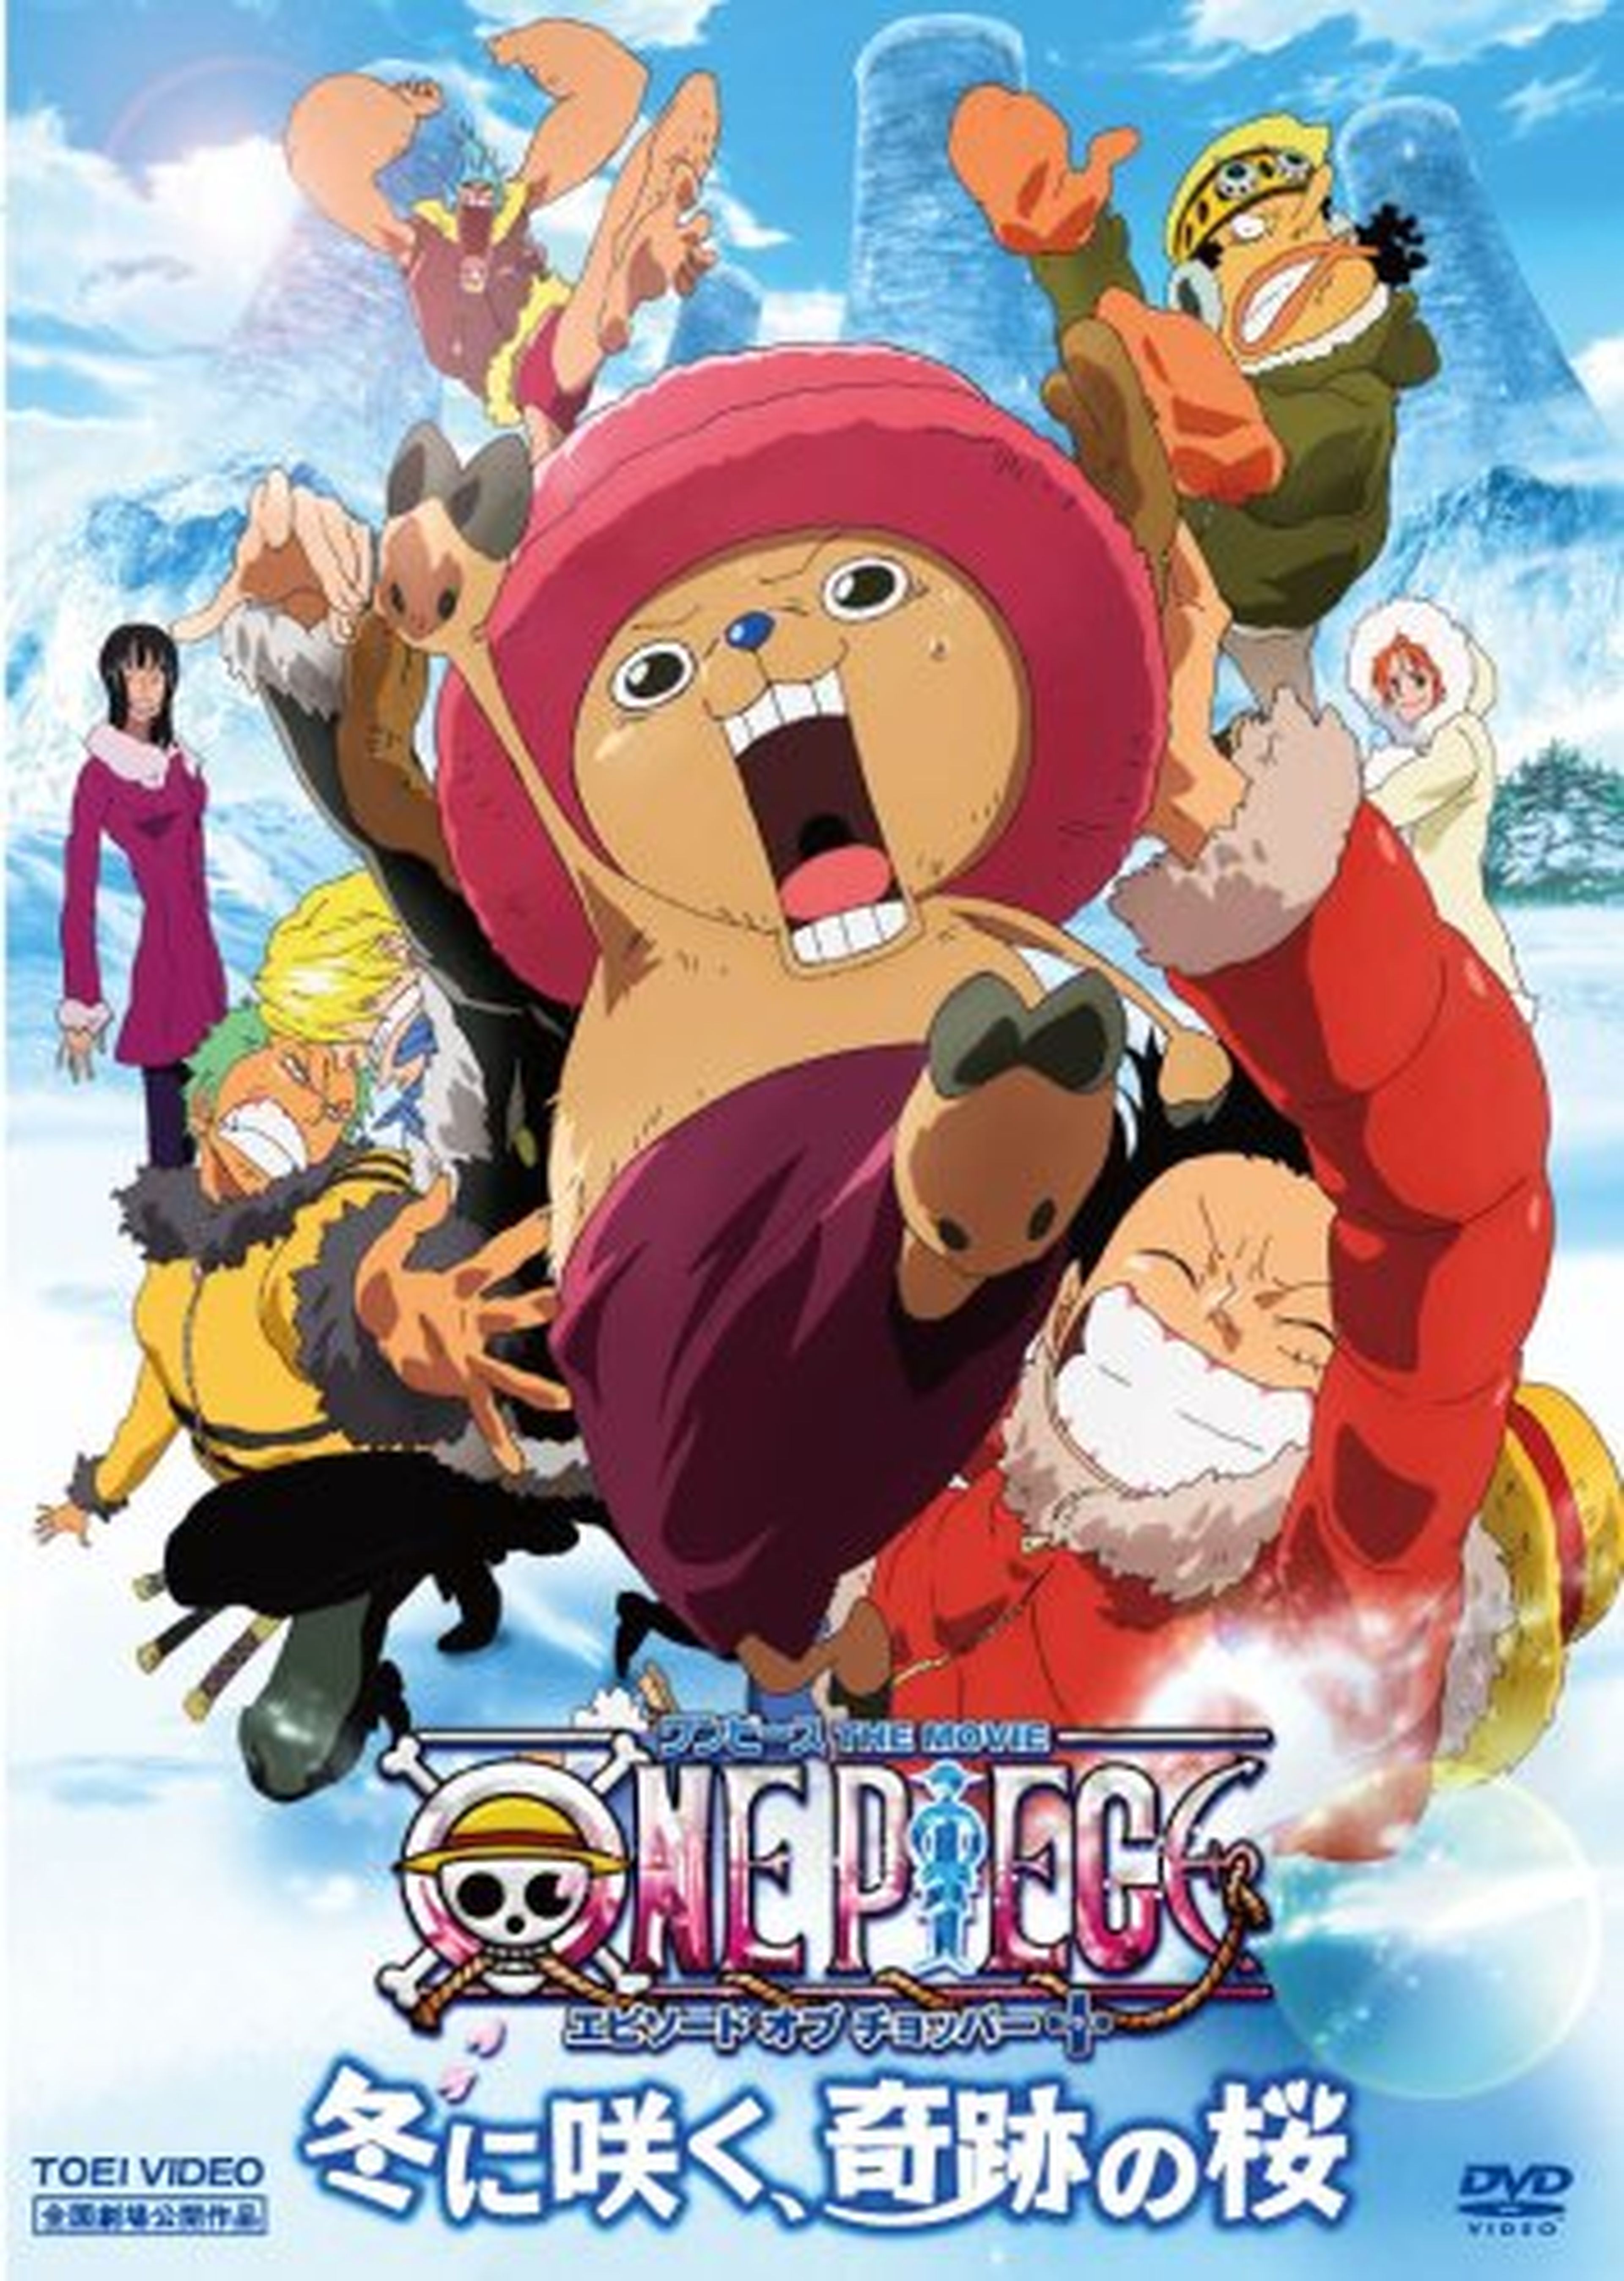 Nueva versión de la peli One Piece: Episode of Chopper